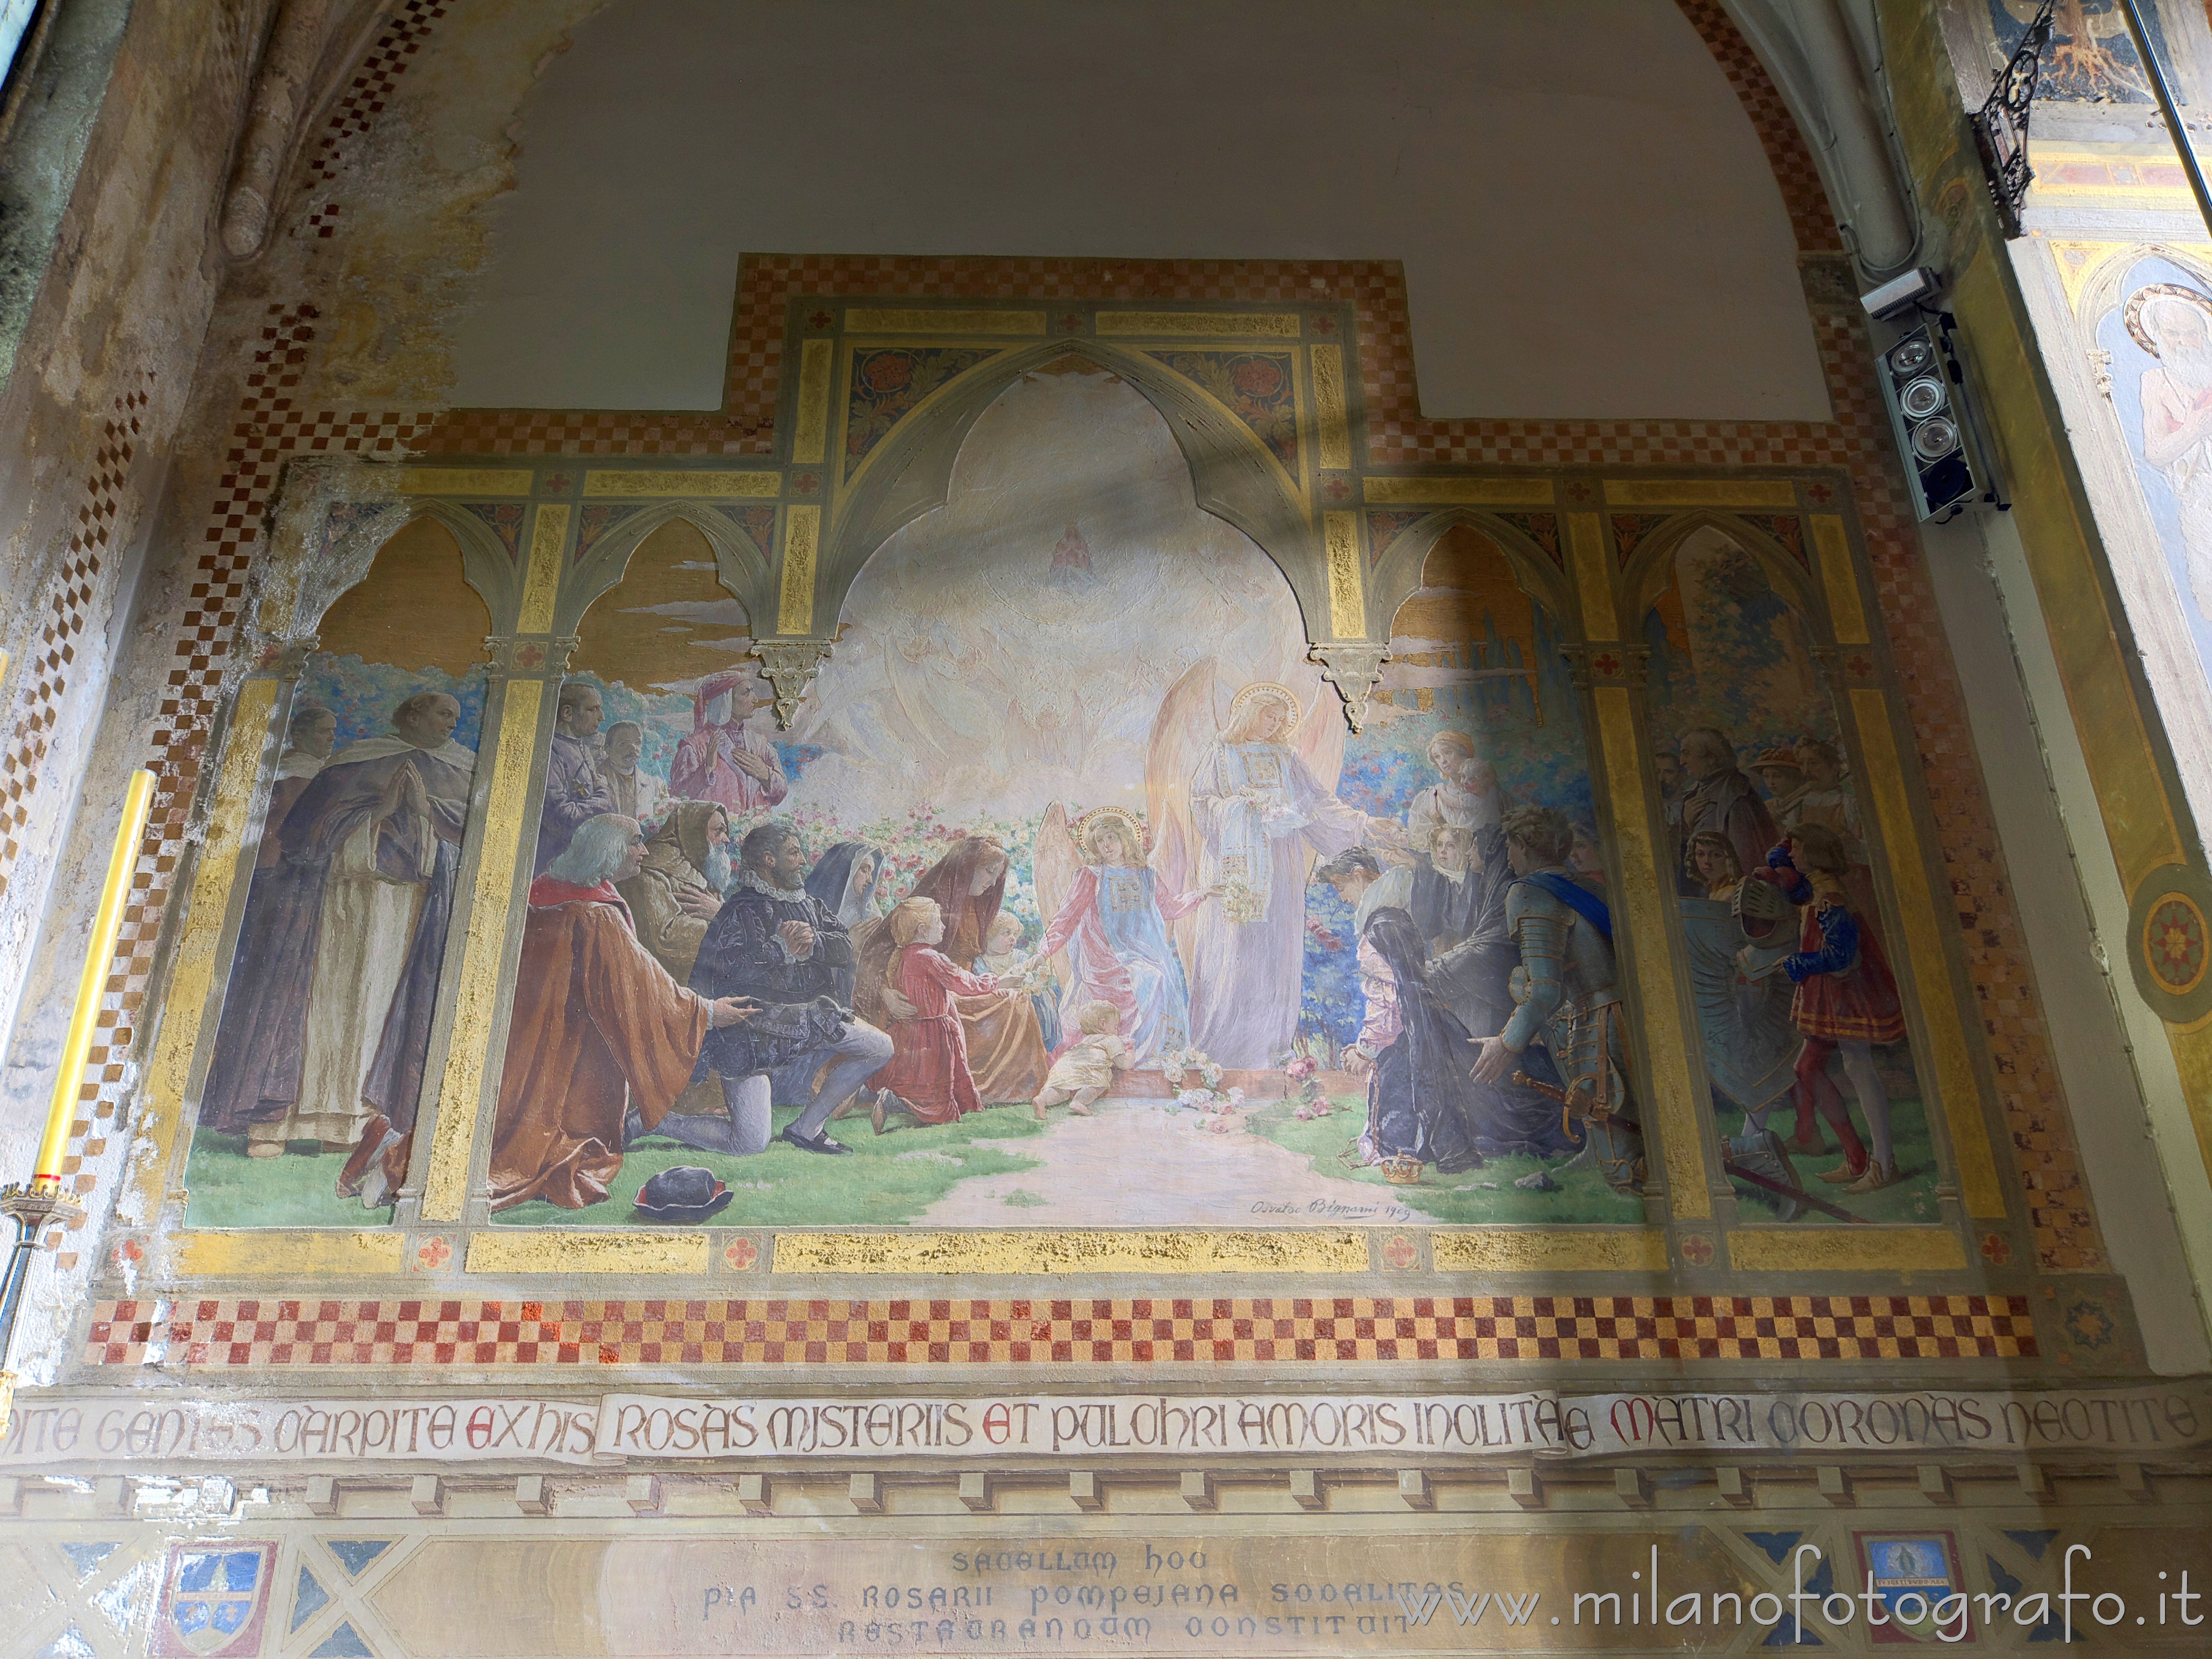 Milan (Italy): Osvaldo Bignami: The Virgin Mary appearing to great heroes in the Church of Santa Maria del Carmine - Milan (Italy)